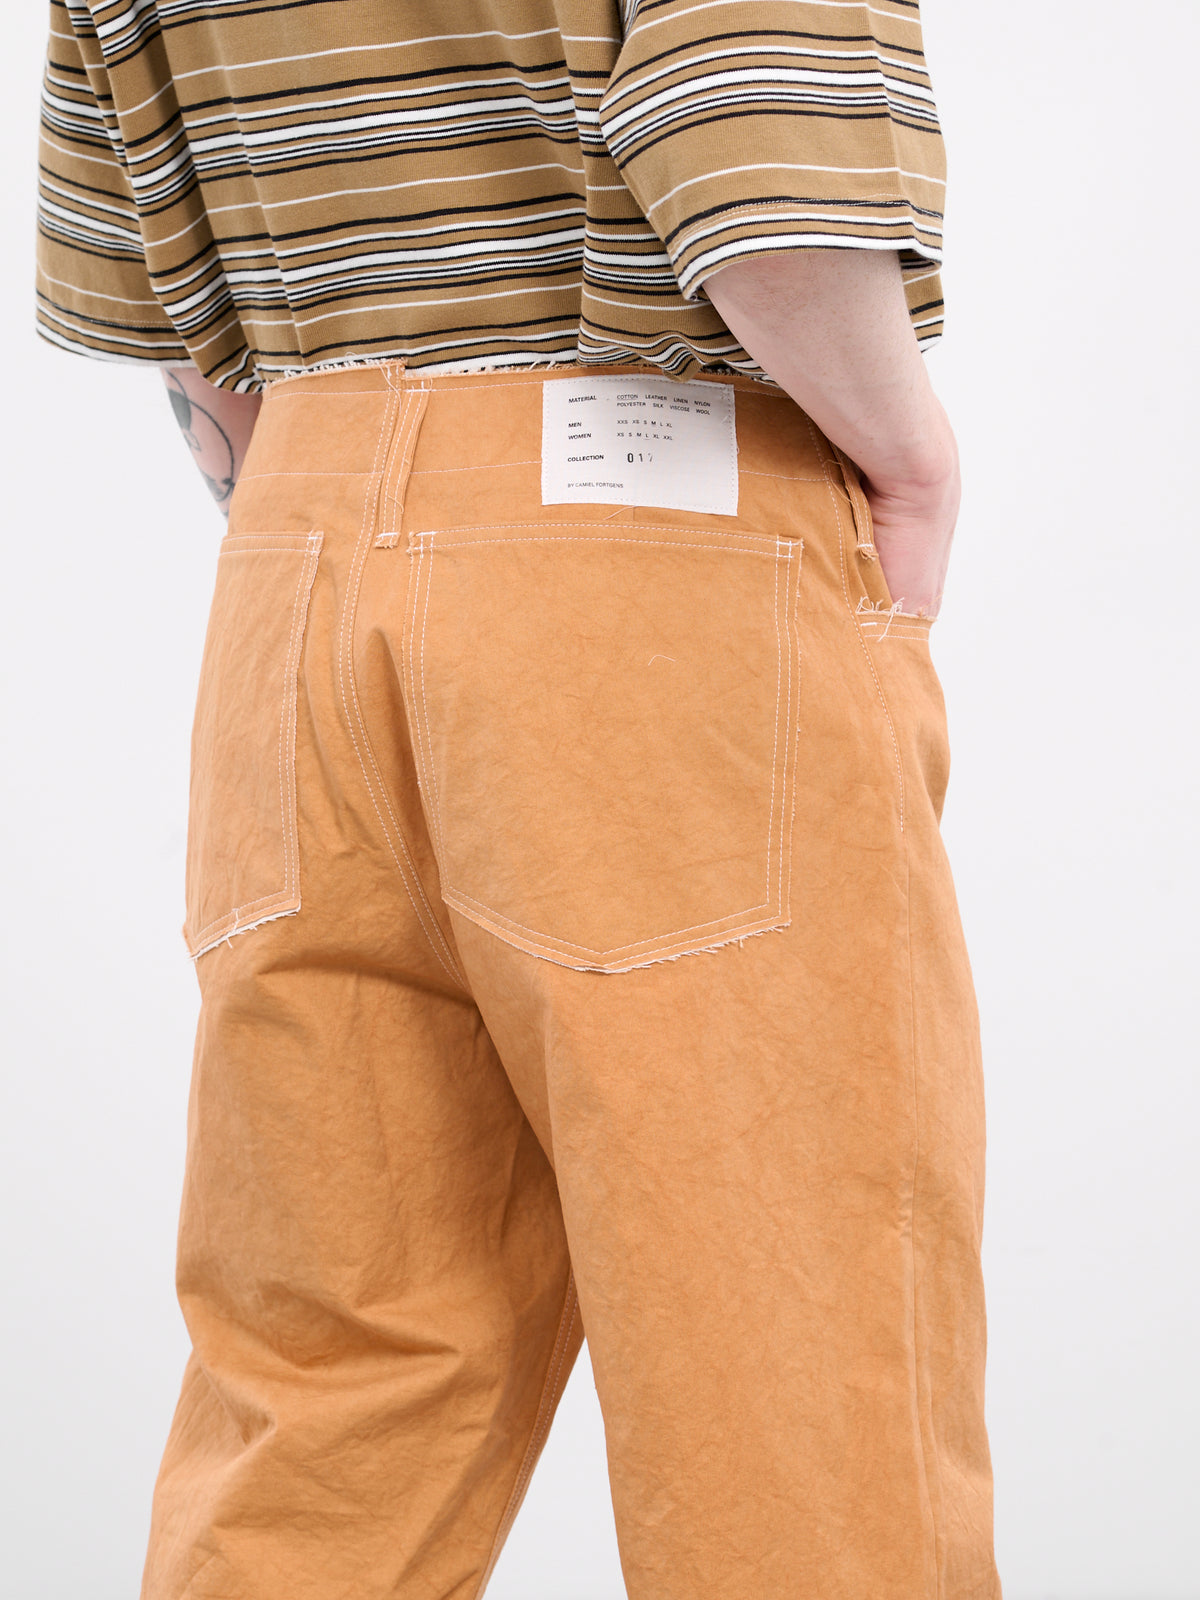 Normal Jeans (17-06-02-01-ORANGE)